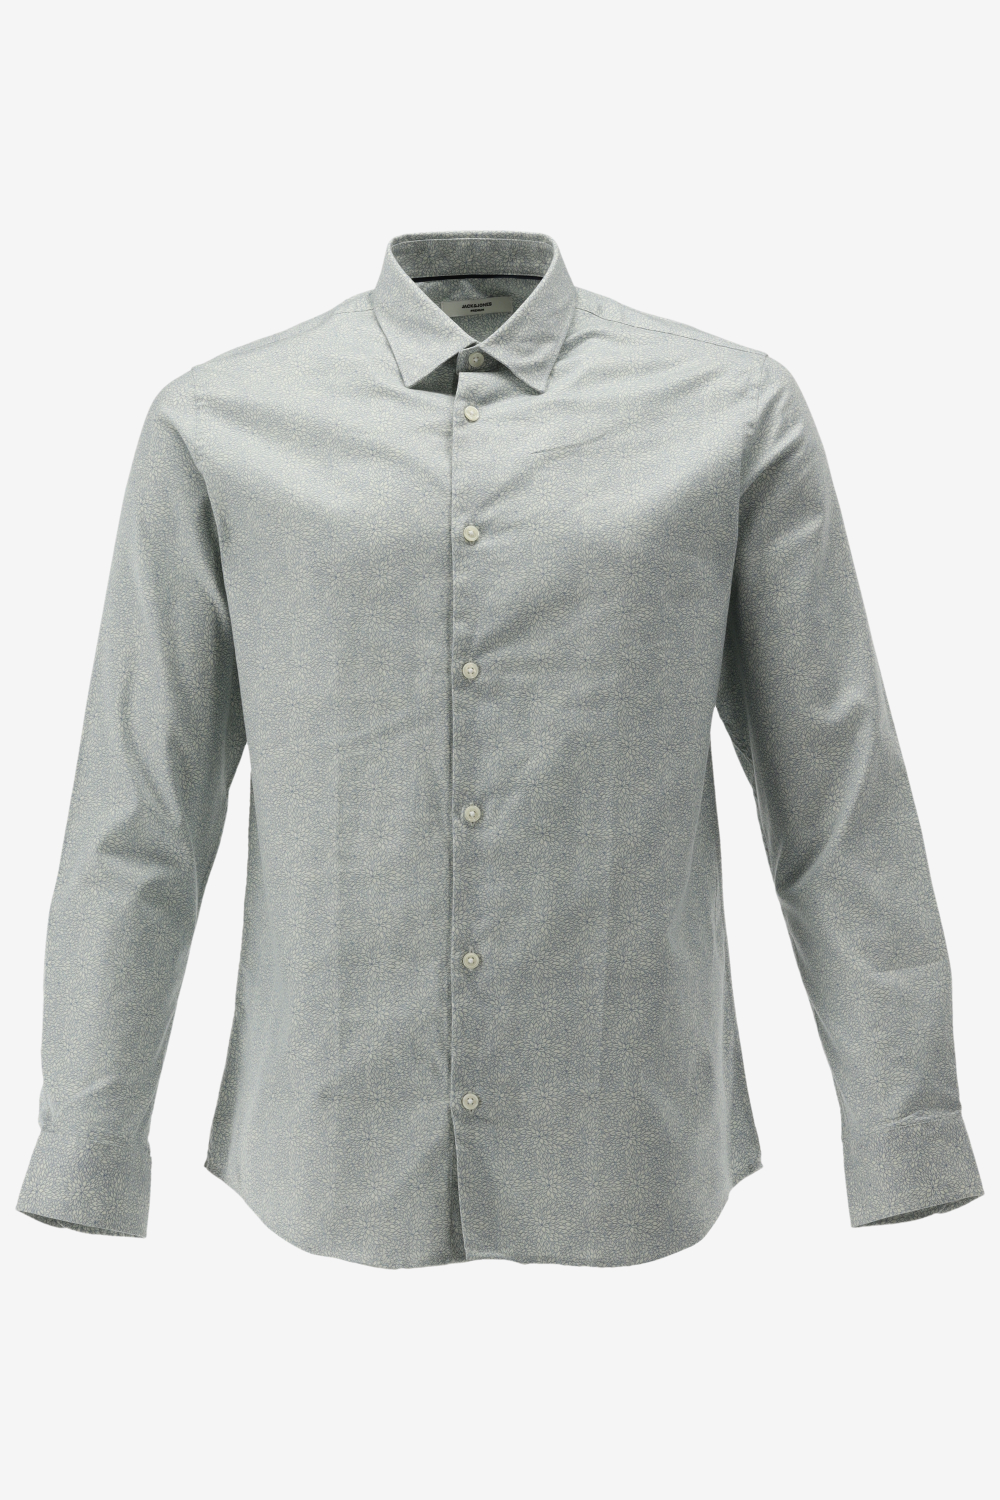 Jack Jones Premium Casual Shirt BLANORDIC